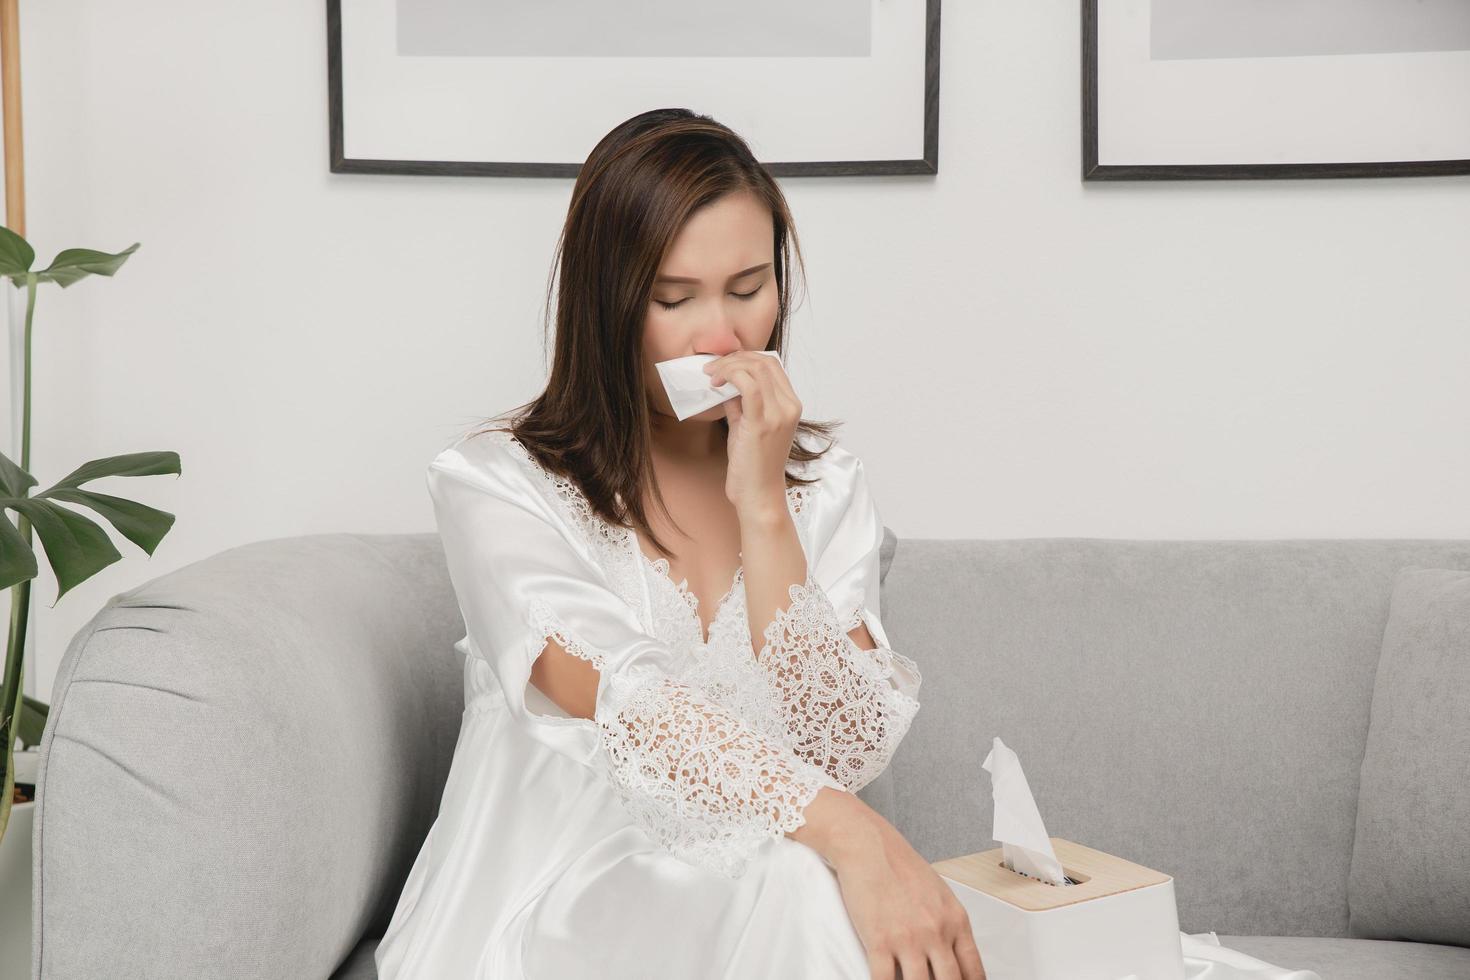 symptômes de la rhinite allergique chez les femmes. femme malade en vêtements de nuit blancs avec un rhume soufflant son nez dans un papier de soie à la maison. allergies au froid photo